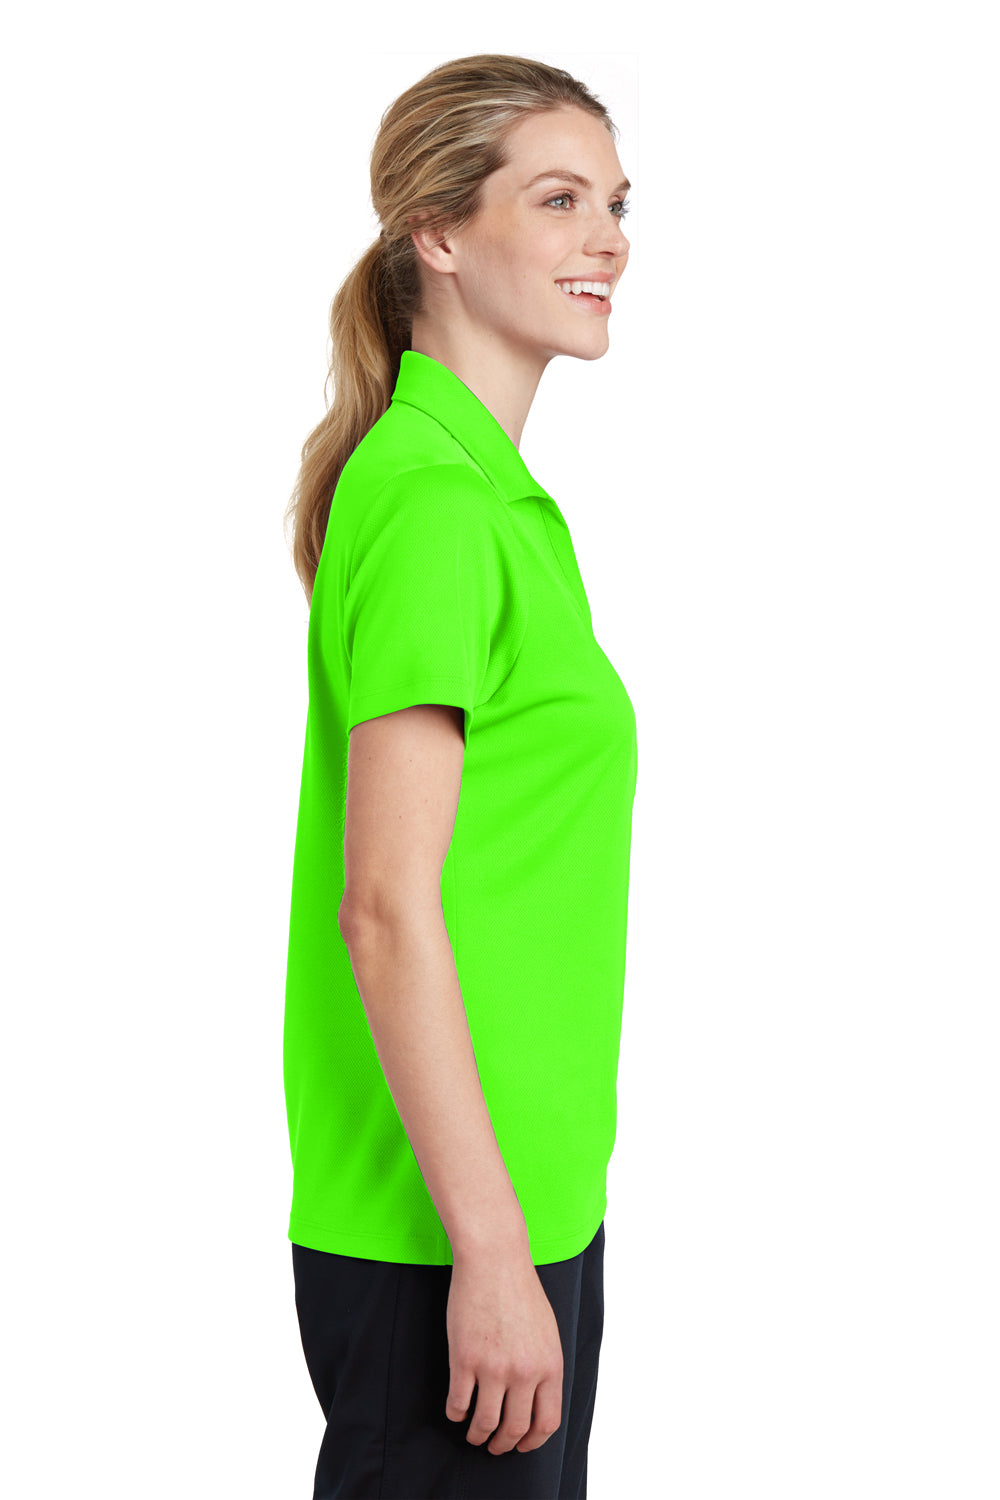 Sport-Tek LST640 Womens RacerMesh Moisture Wicking Short Sleeve Polo Shirt Neon Green Side